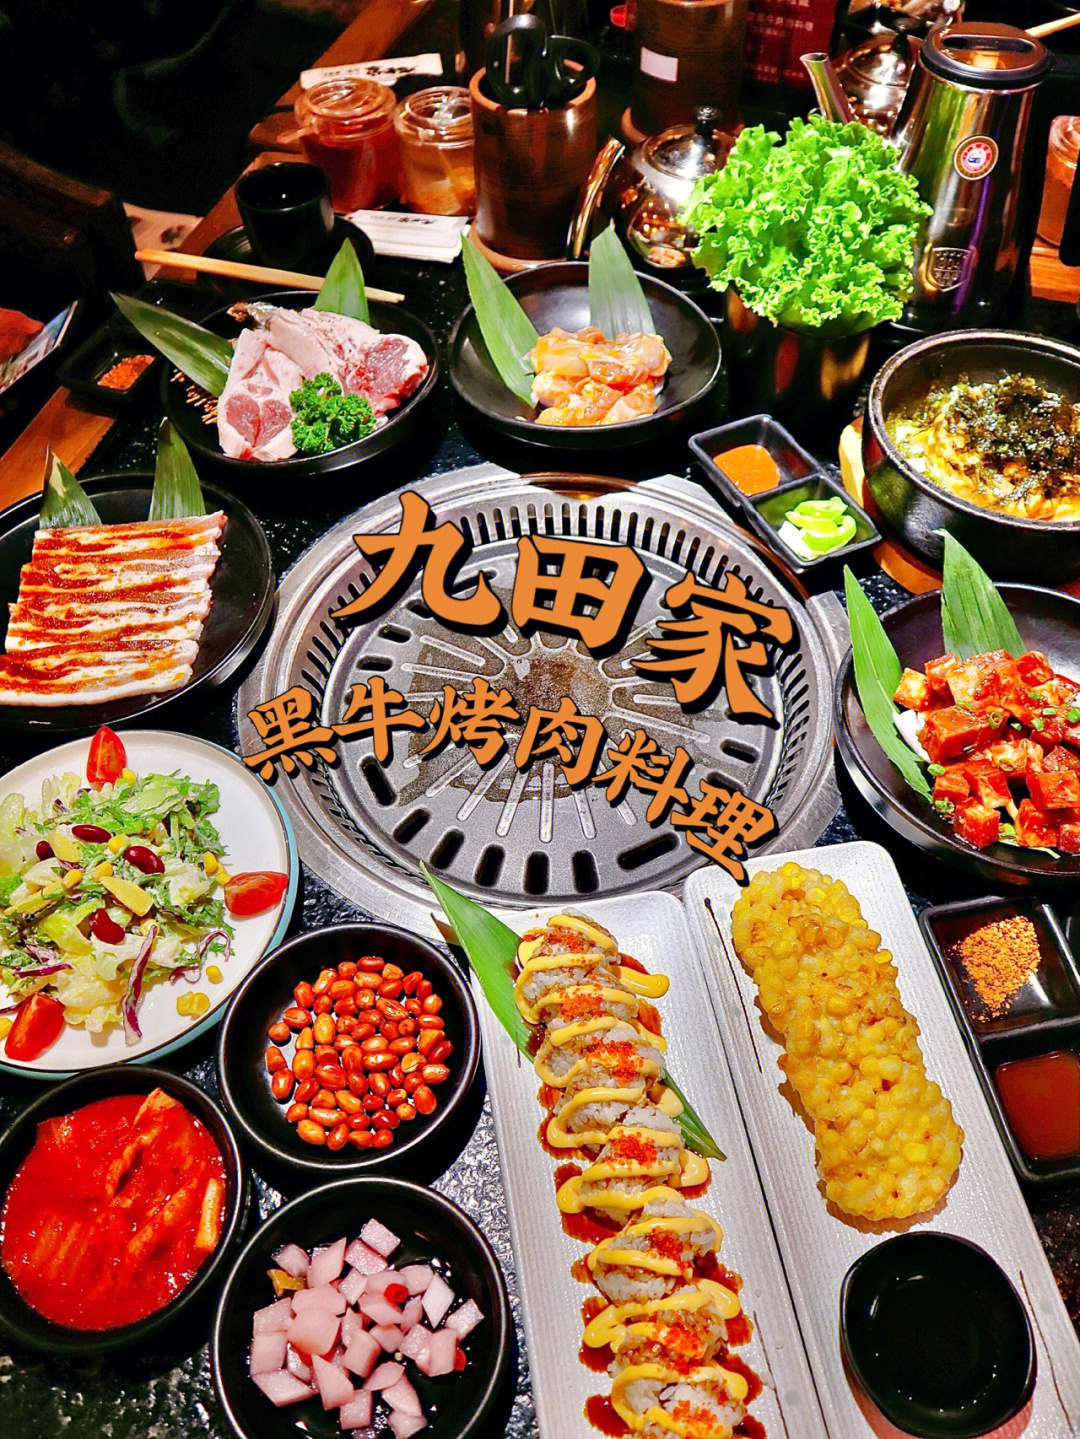 九田家烤肉菜单套餐图片